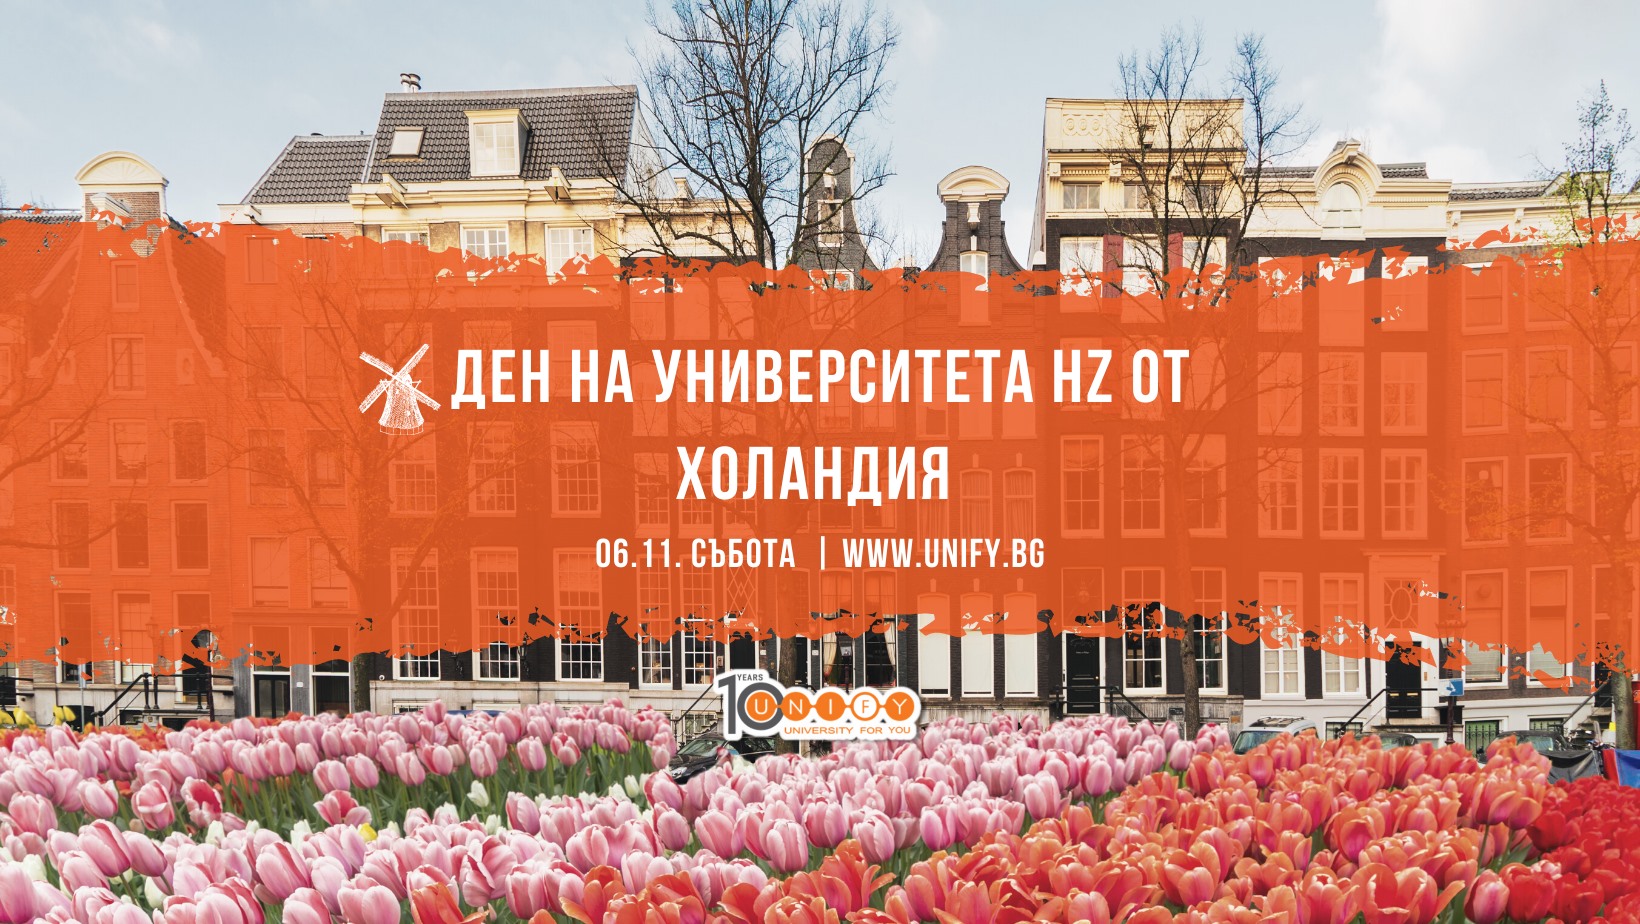 Ден на университета HZ от Холандия